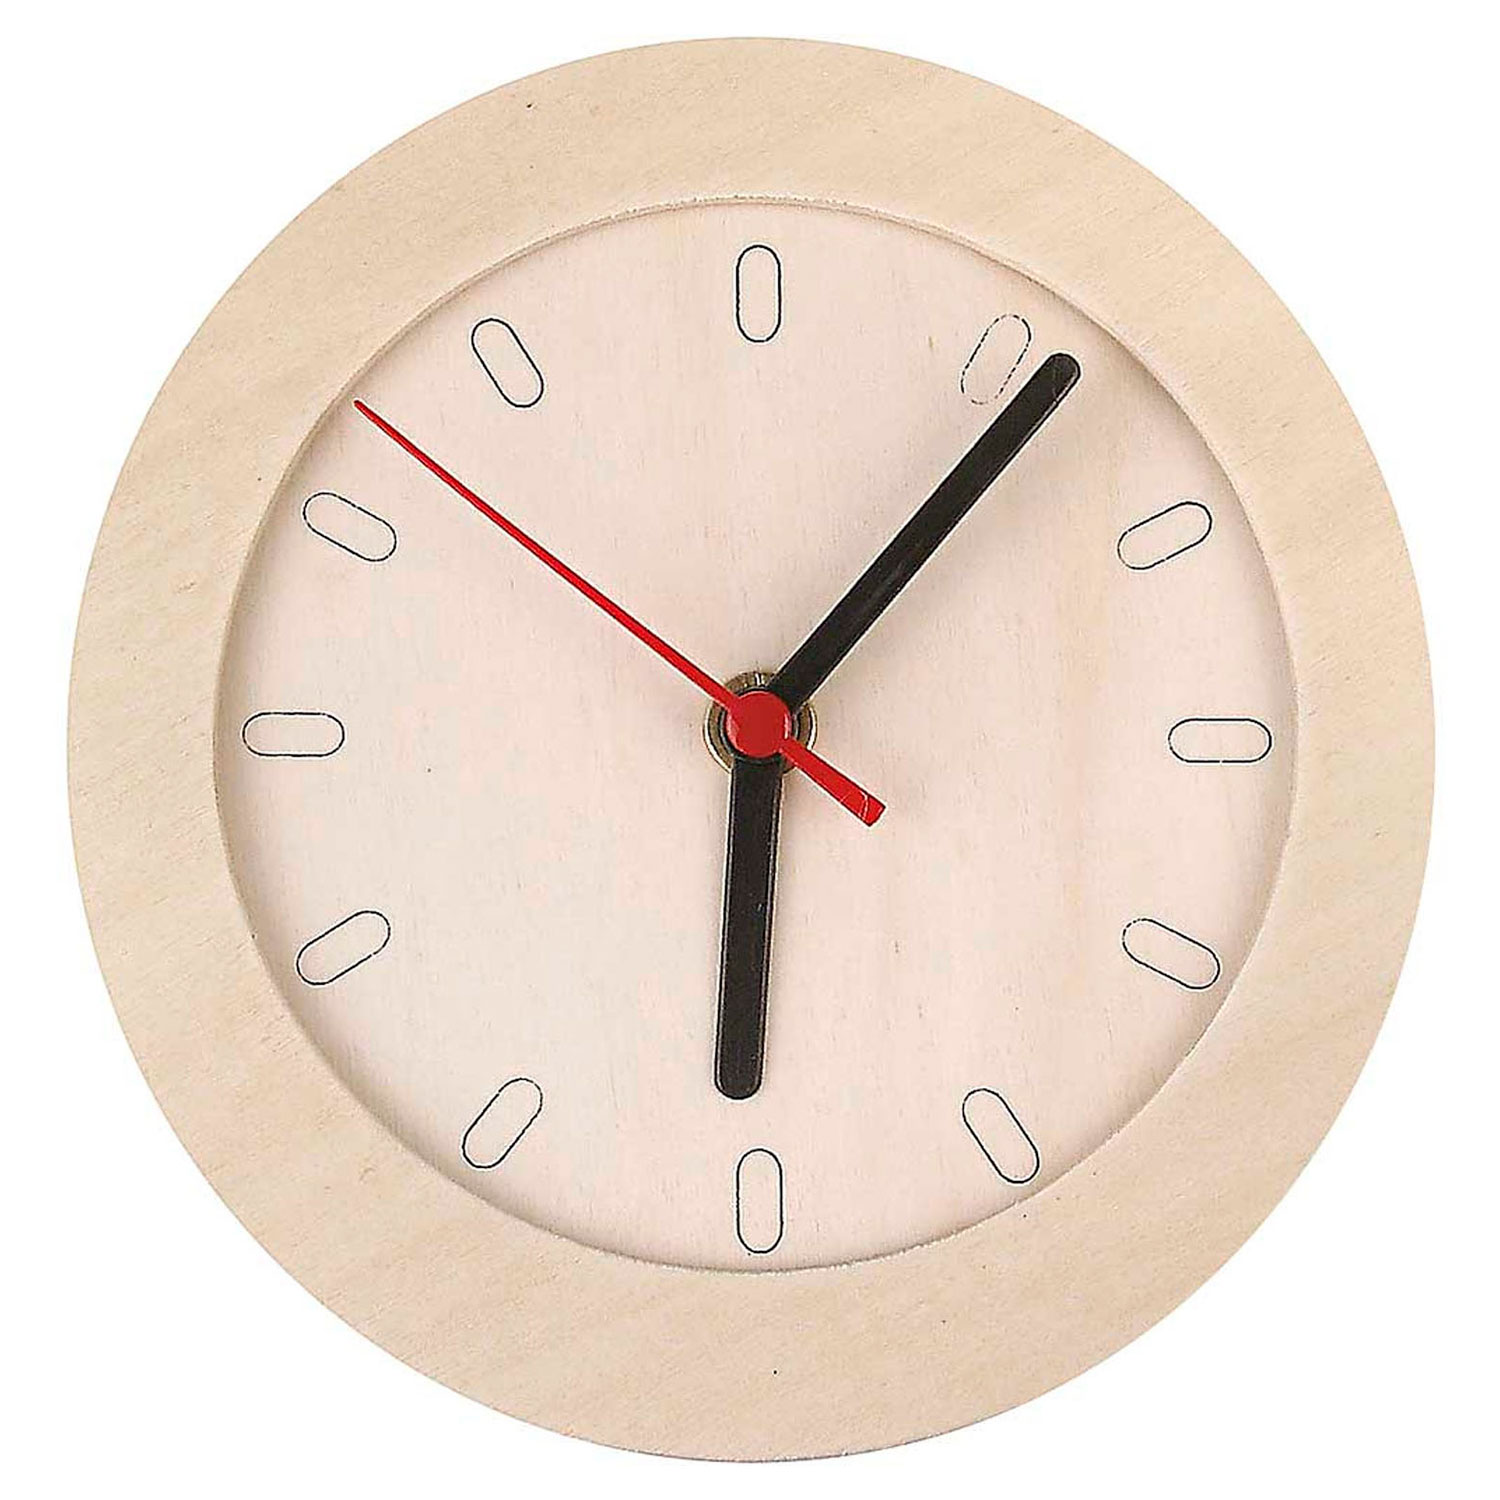 Horloge avec cadre en bois